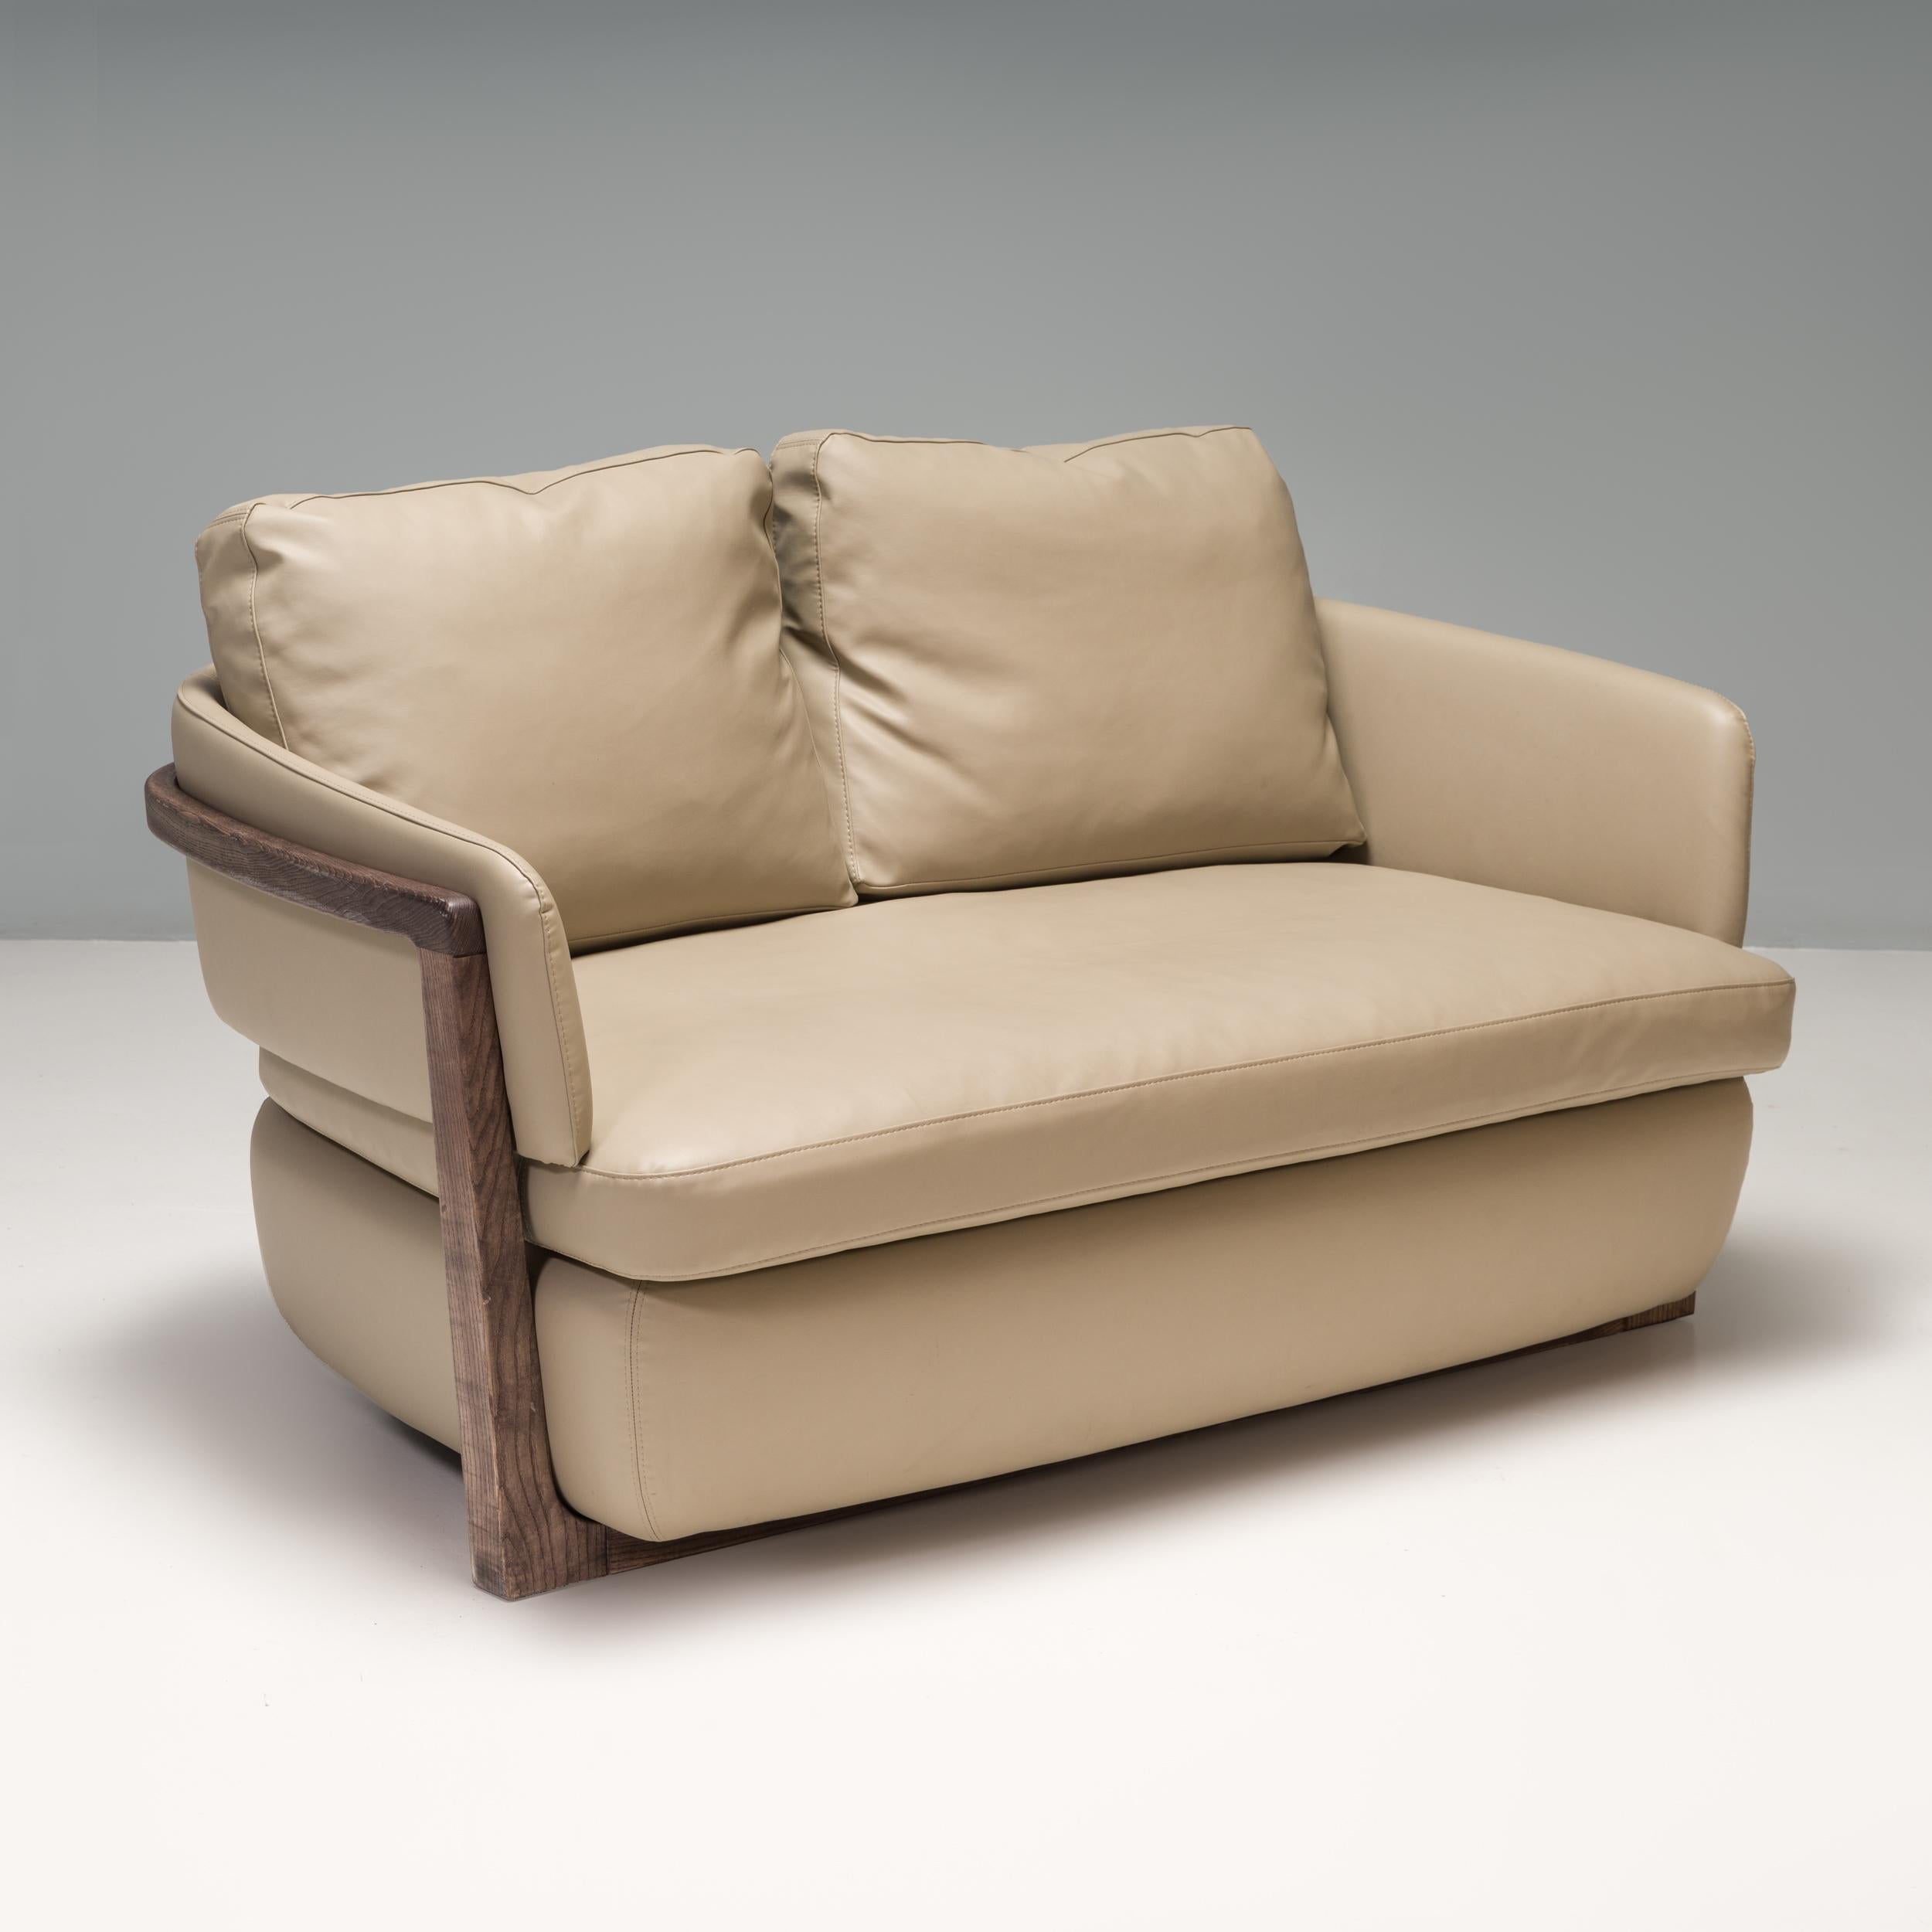 Das Sofa Arena 147 wurde von Emmanuel Gallina für Porada entworfen und ist ein wunderschönes Stück modernes Design.

Der kompakte Sessel hat eine sanft geschwungene Form mit integrierter Rückenlehne und Armlehnen, die über dem Sockel sitzen.

Ein